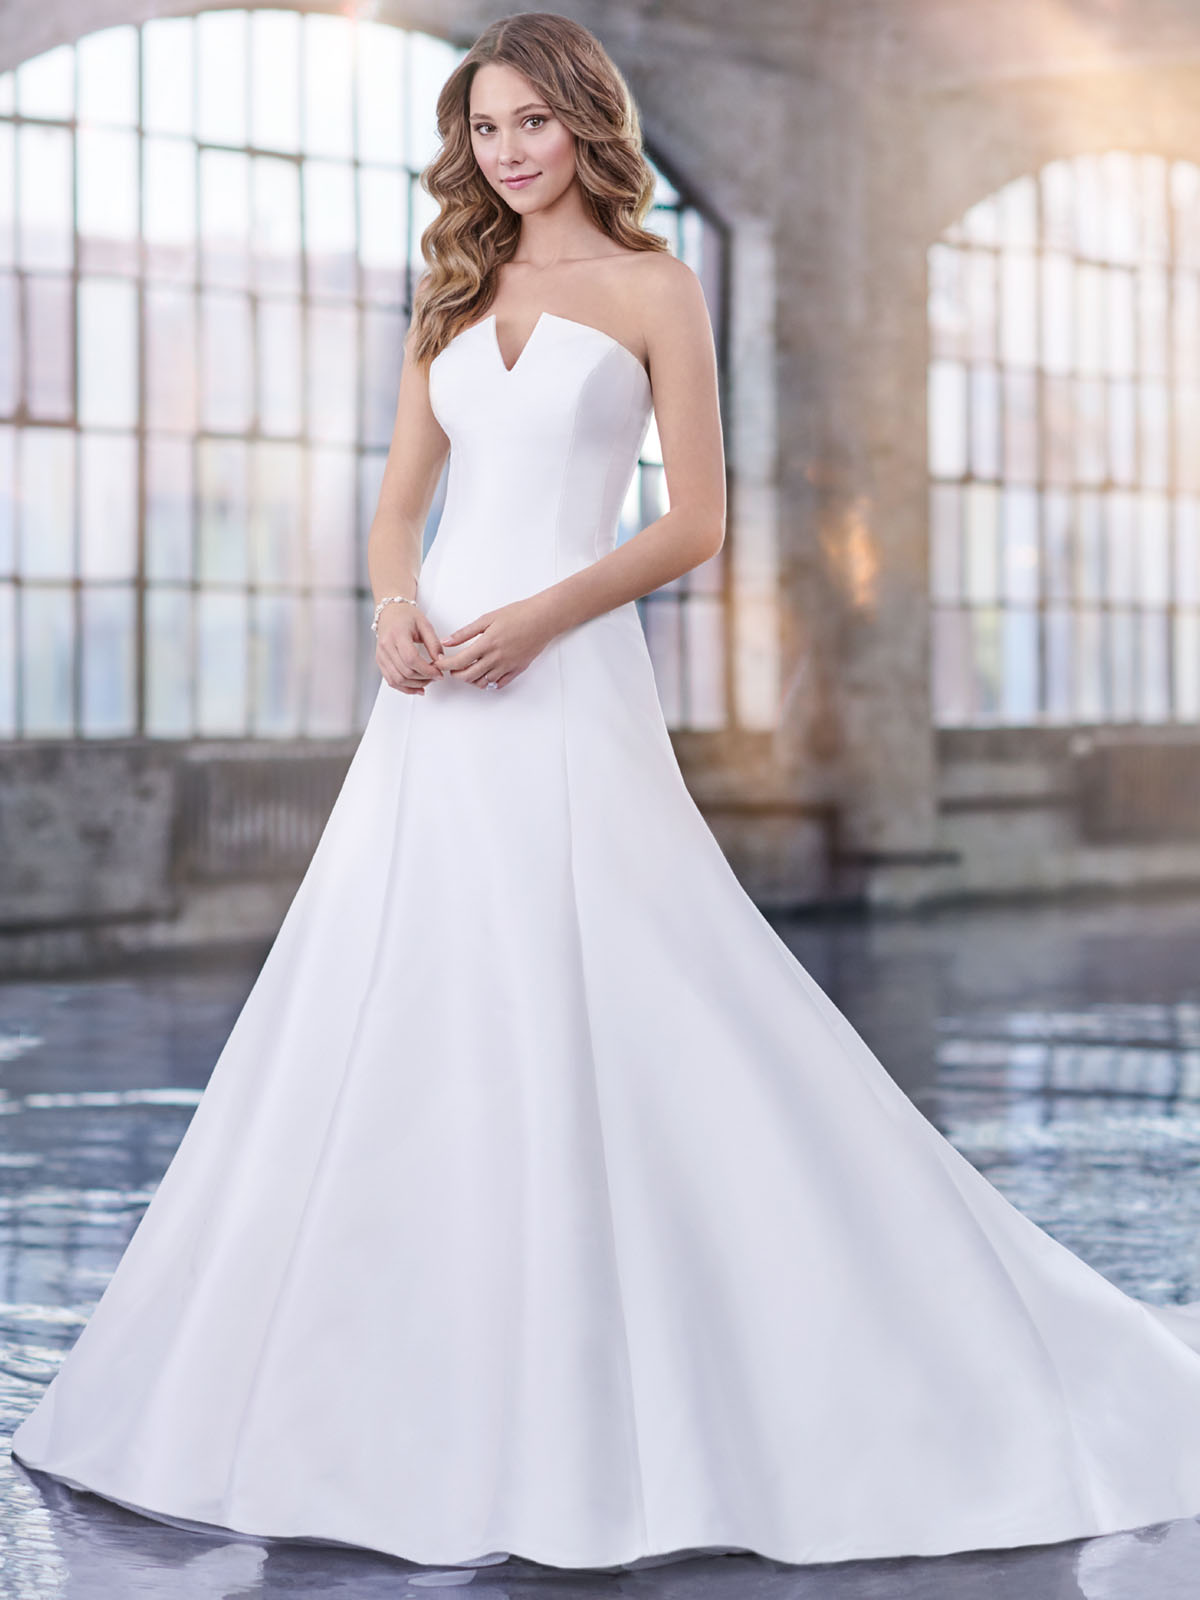 Minimalista e ultra-elegante, este vestido de noiva apresenta um decote entalhado e corte evas impecvel esse conjunto traz ao modelo charme e sofisticao para o estilo proposto.